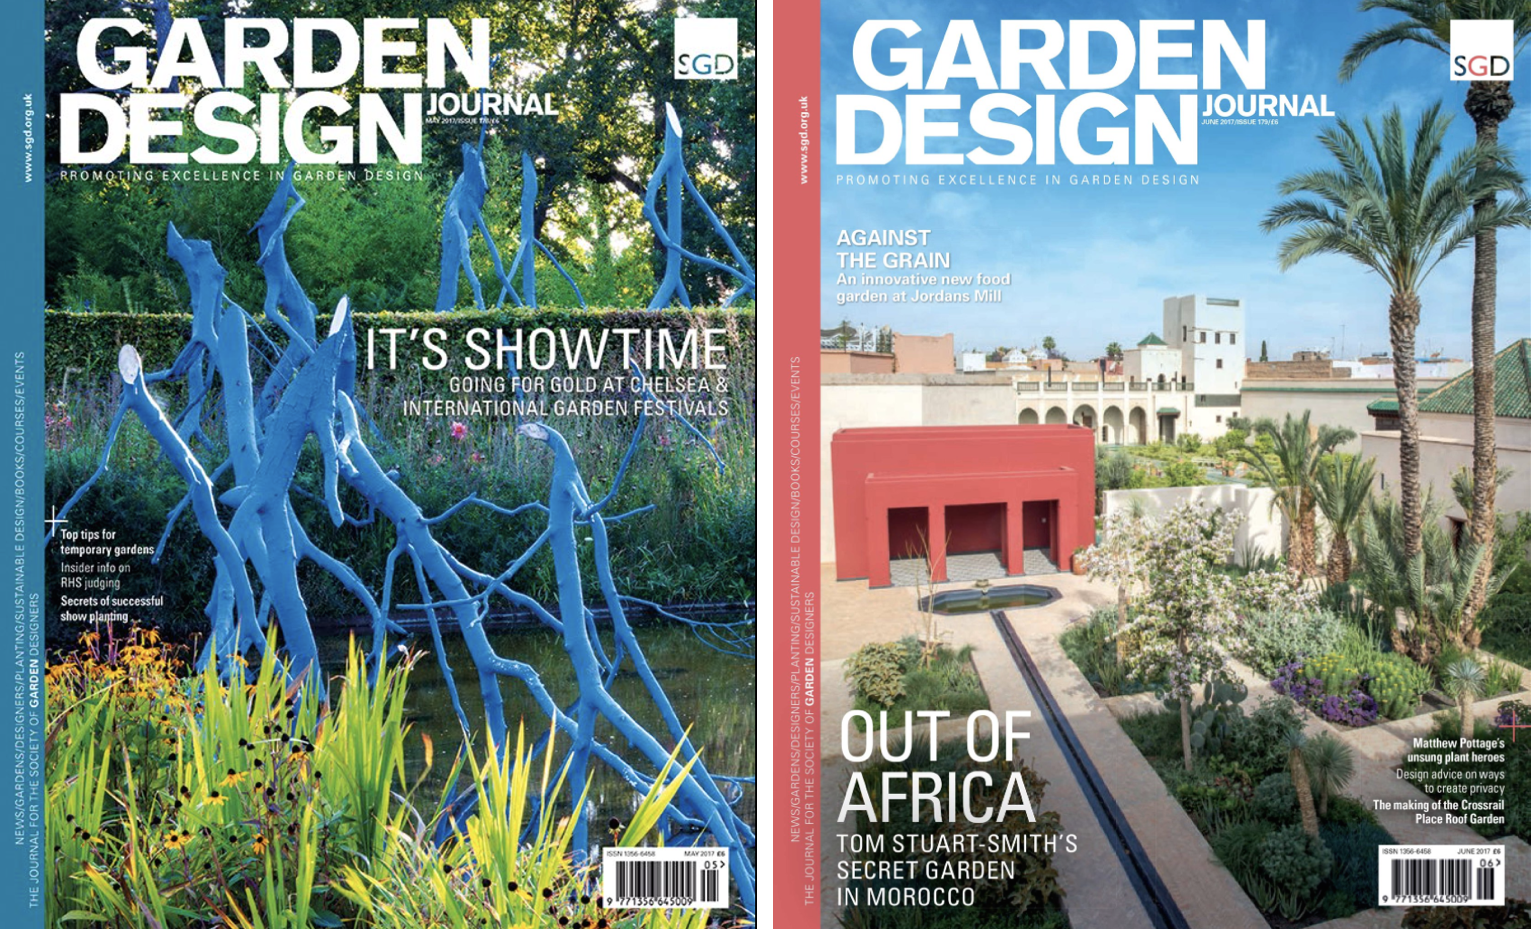 Award For Garden Design Journal Landscape Institute